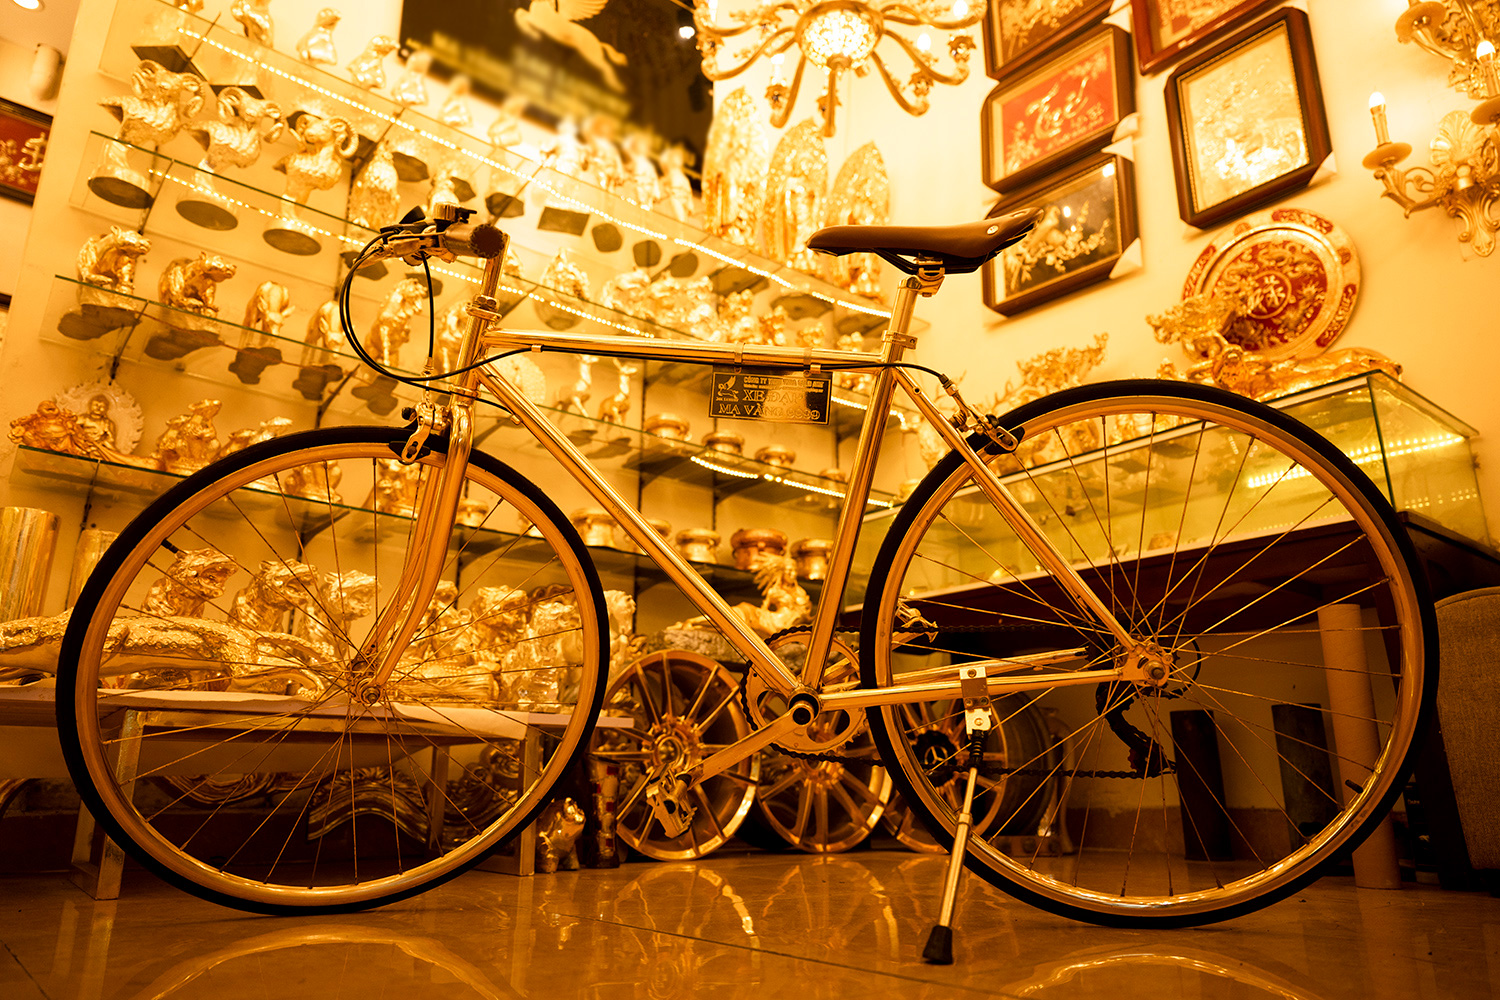 Chiếc xe thuộc sở hữu của anh Vũ Hoàng Long (Đống Đa, Hà Nội). Theo tìm hiểu, đây là dòng xe đạp thể thao cao cấp của Nhật được anh Long mua về để chế tác mạ vàng.